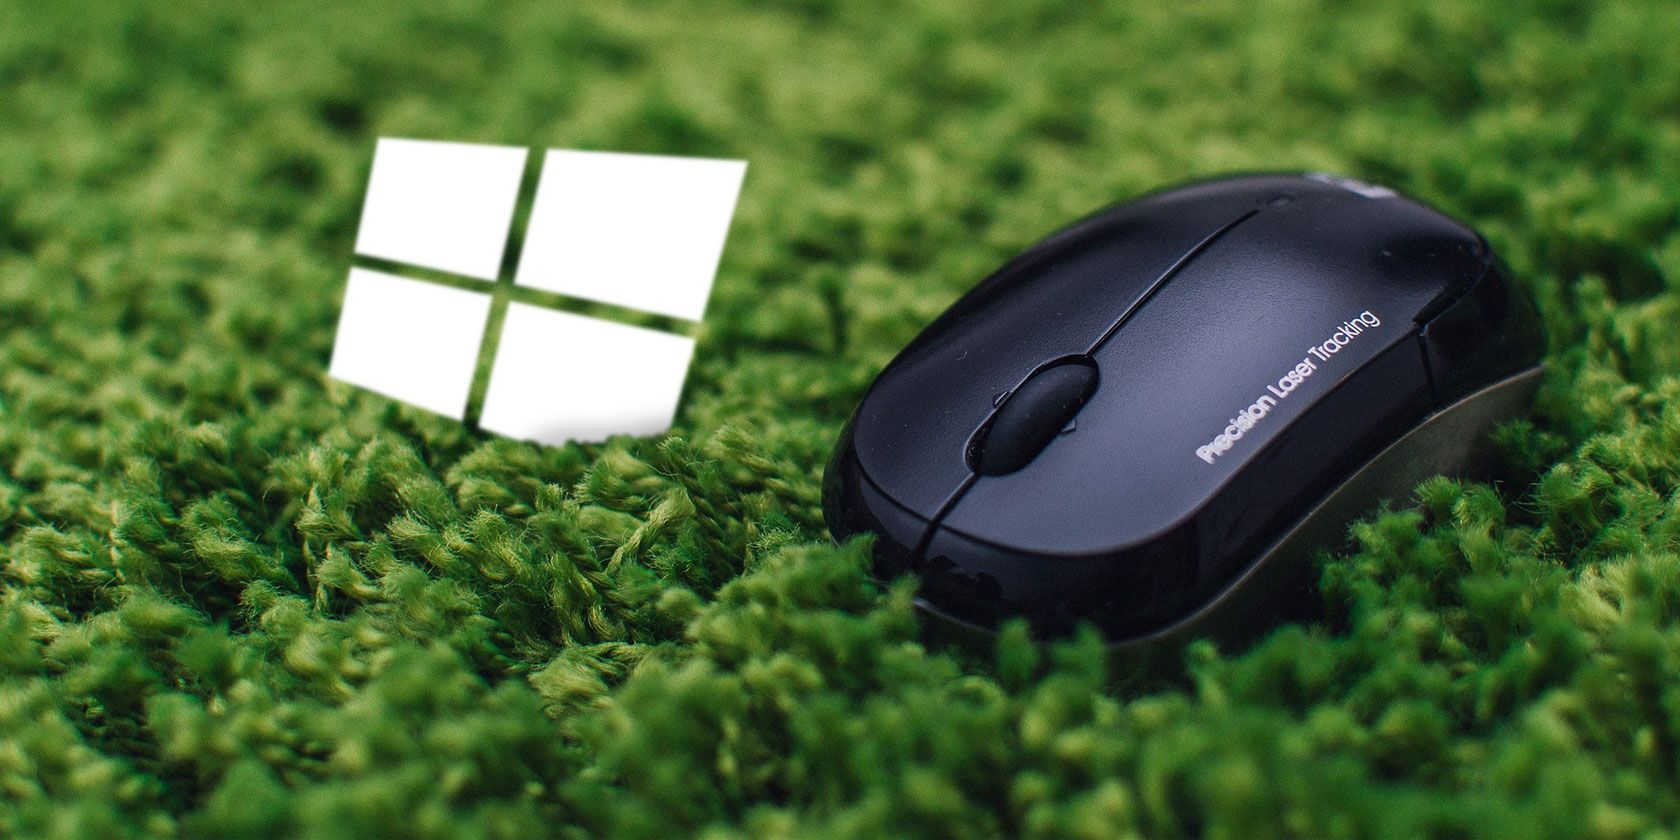 xinput test mouse windows 10